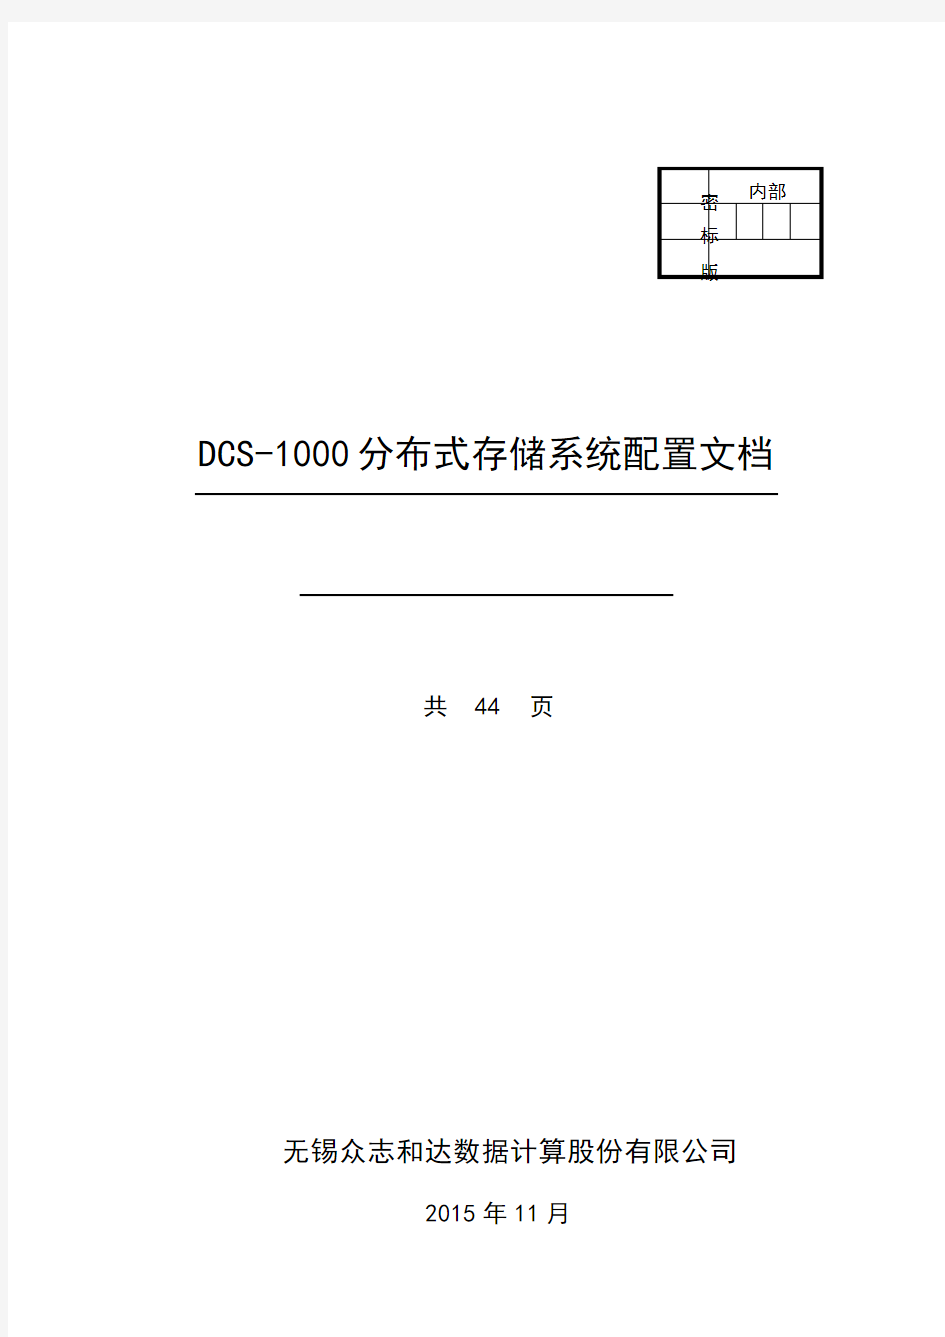 DCS-1000分布式存储系统配置手册